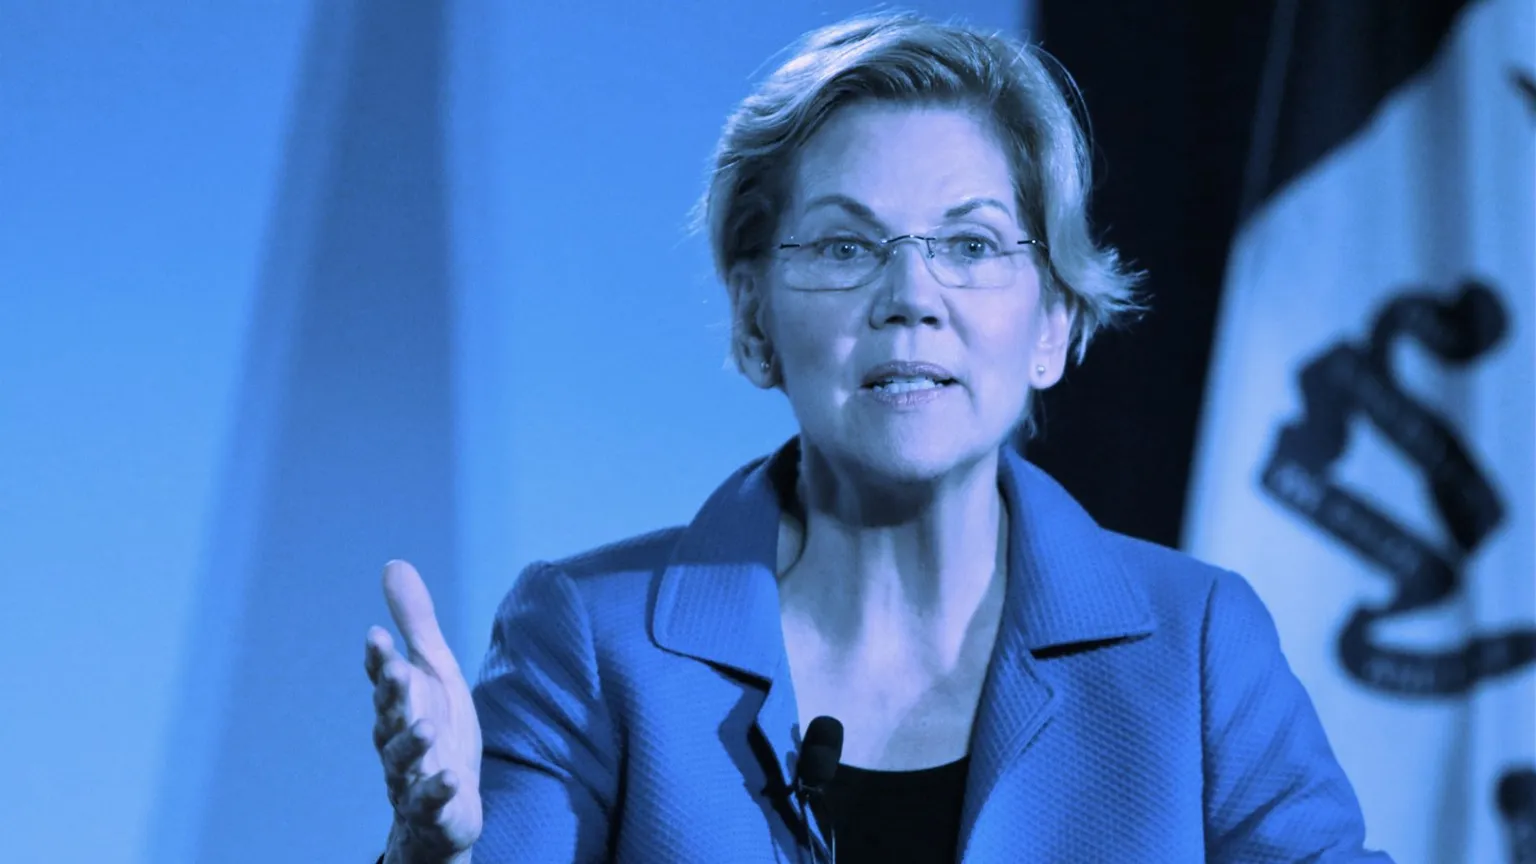 Elizabeth Warren in 2019. Image: Shutterstock